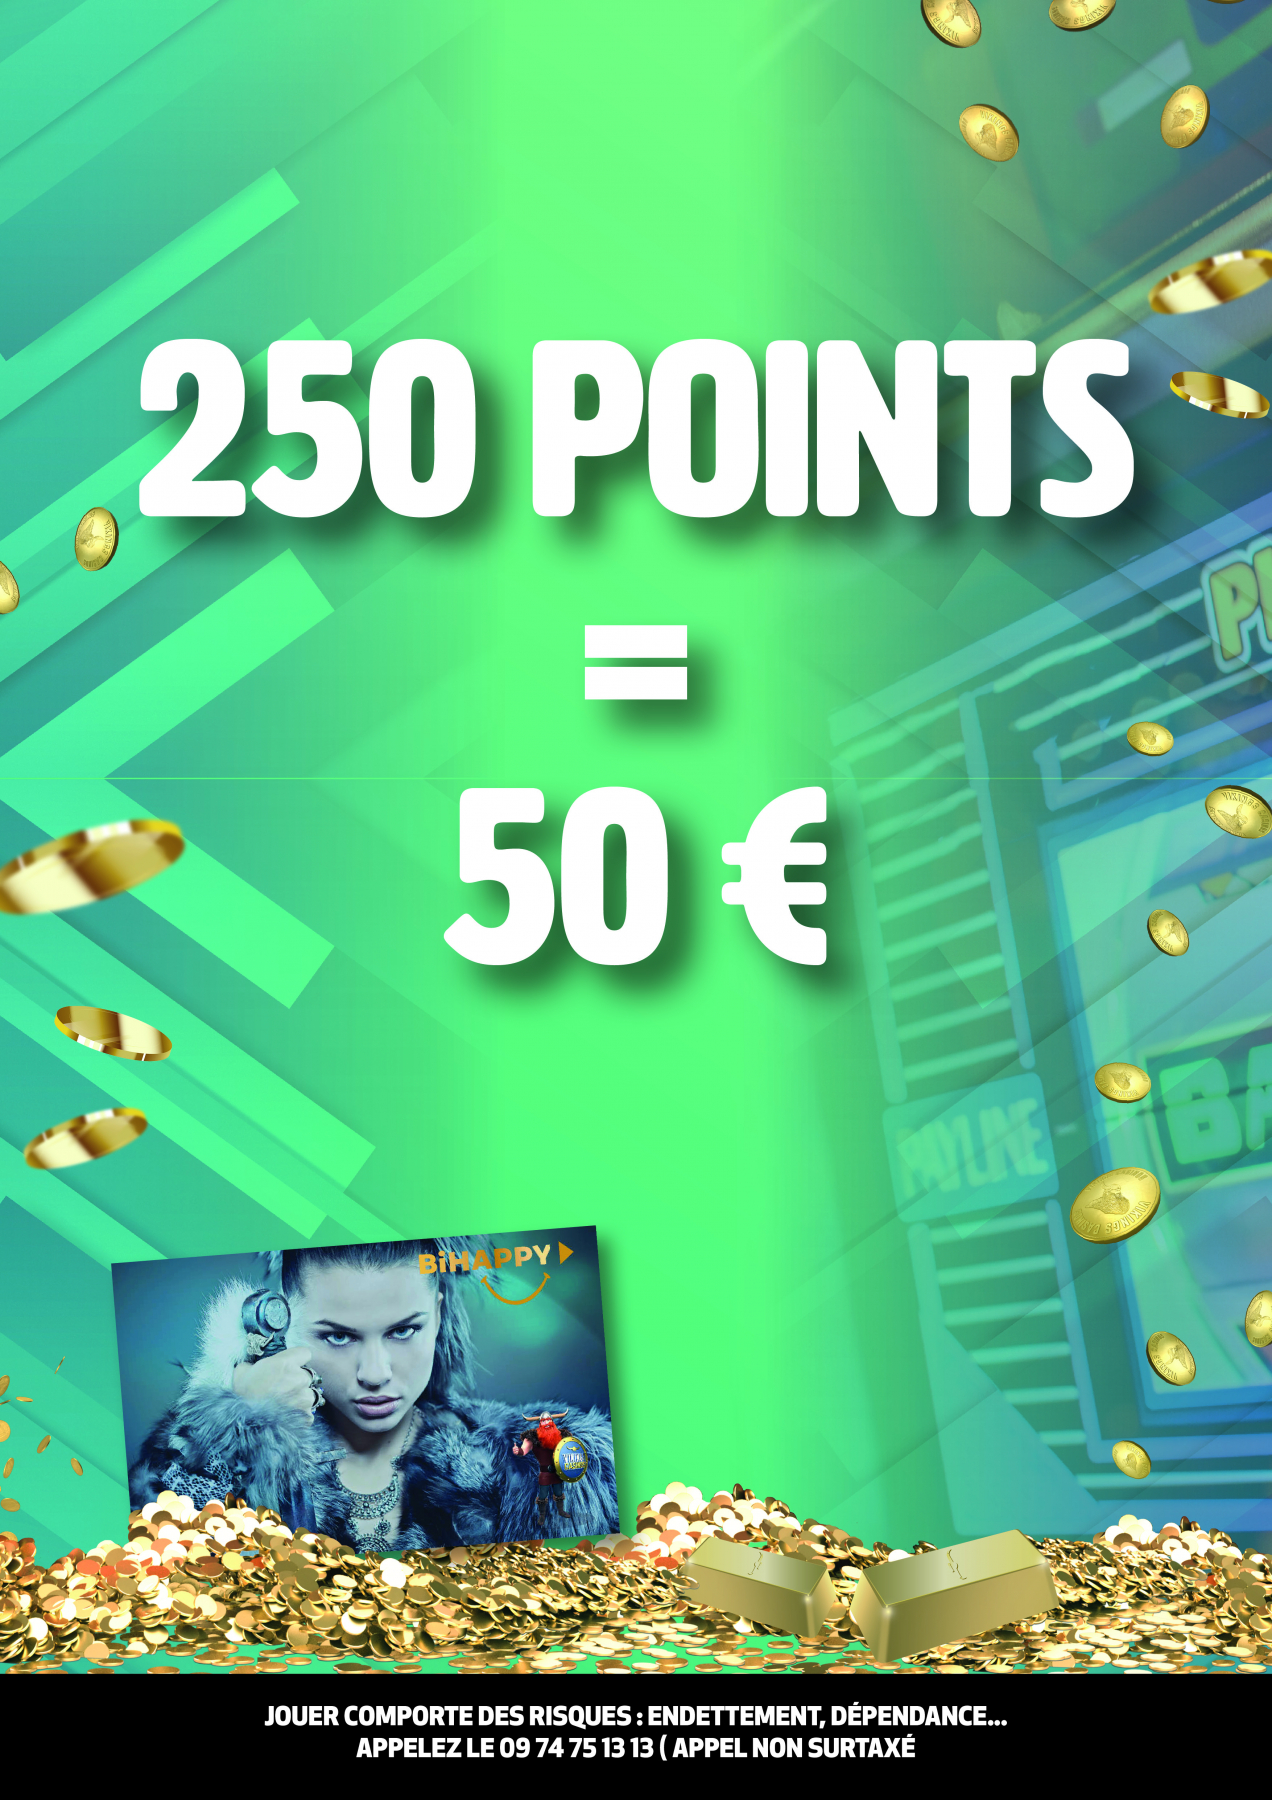 50 € Contre 250 Points